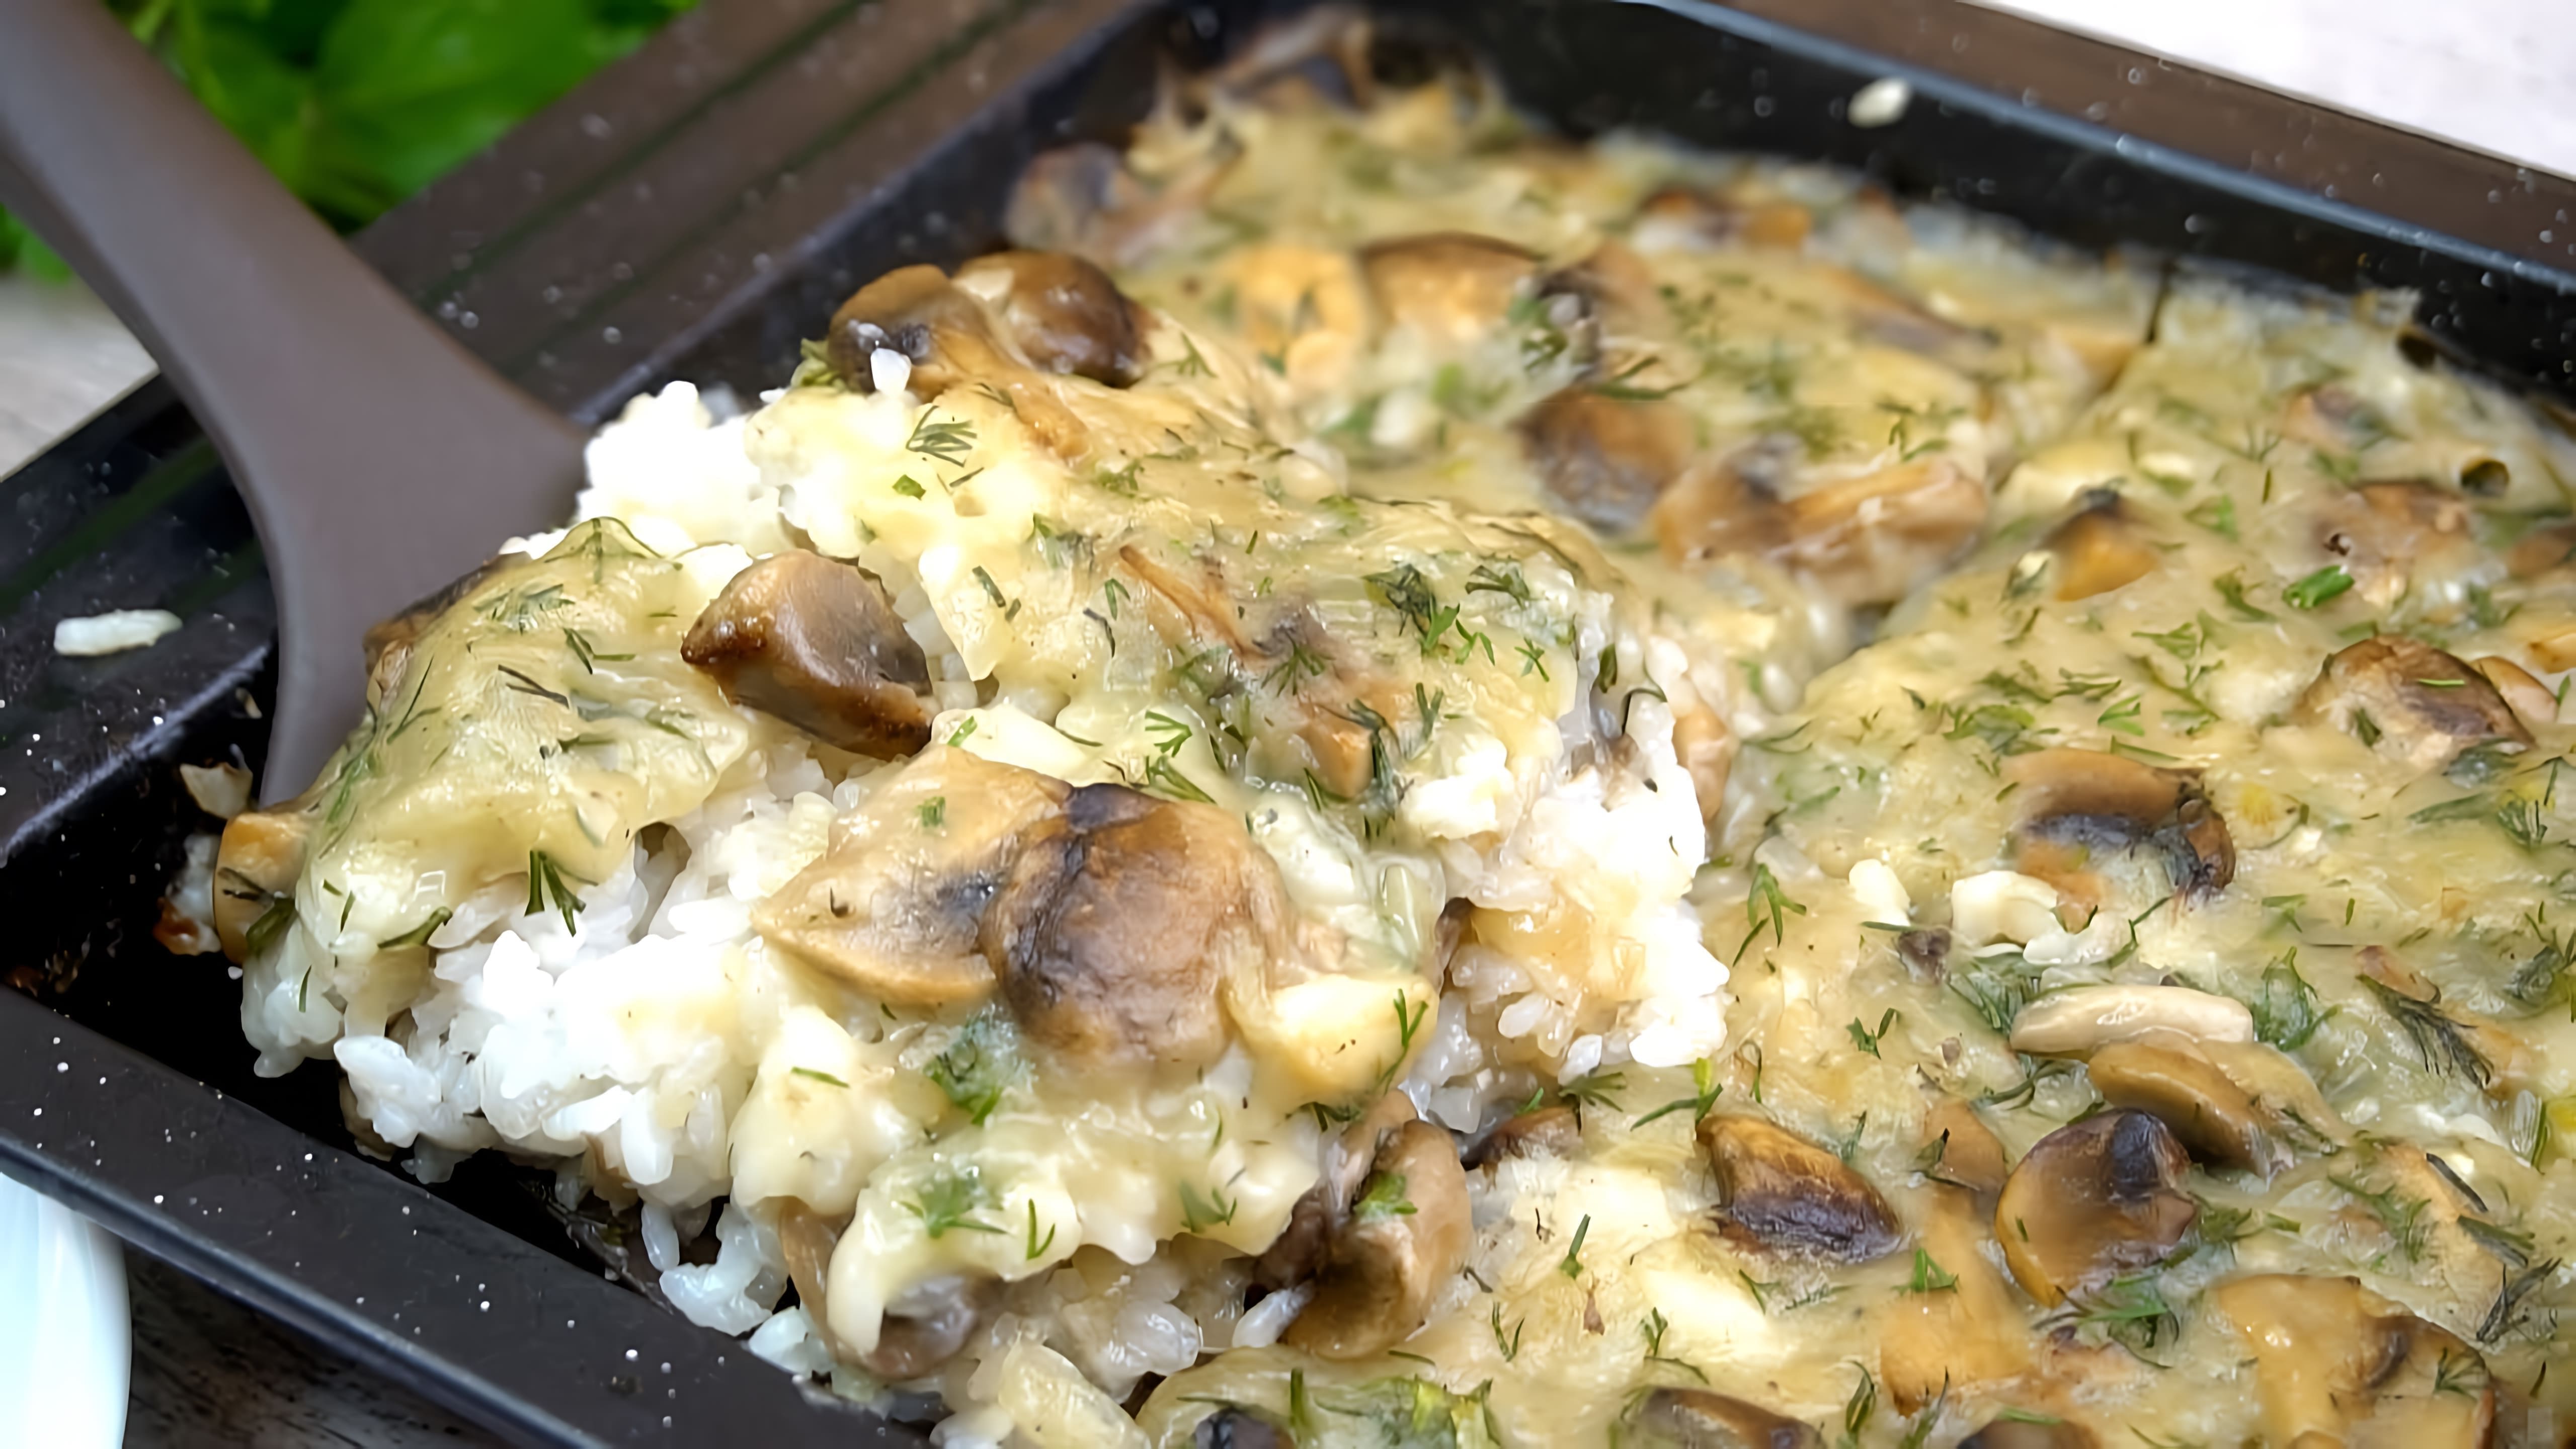 В этом видео демонстрируется рецепт приготовления риса с грибами в соусе в духовке